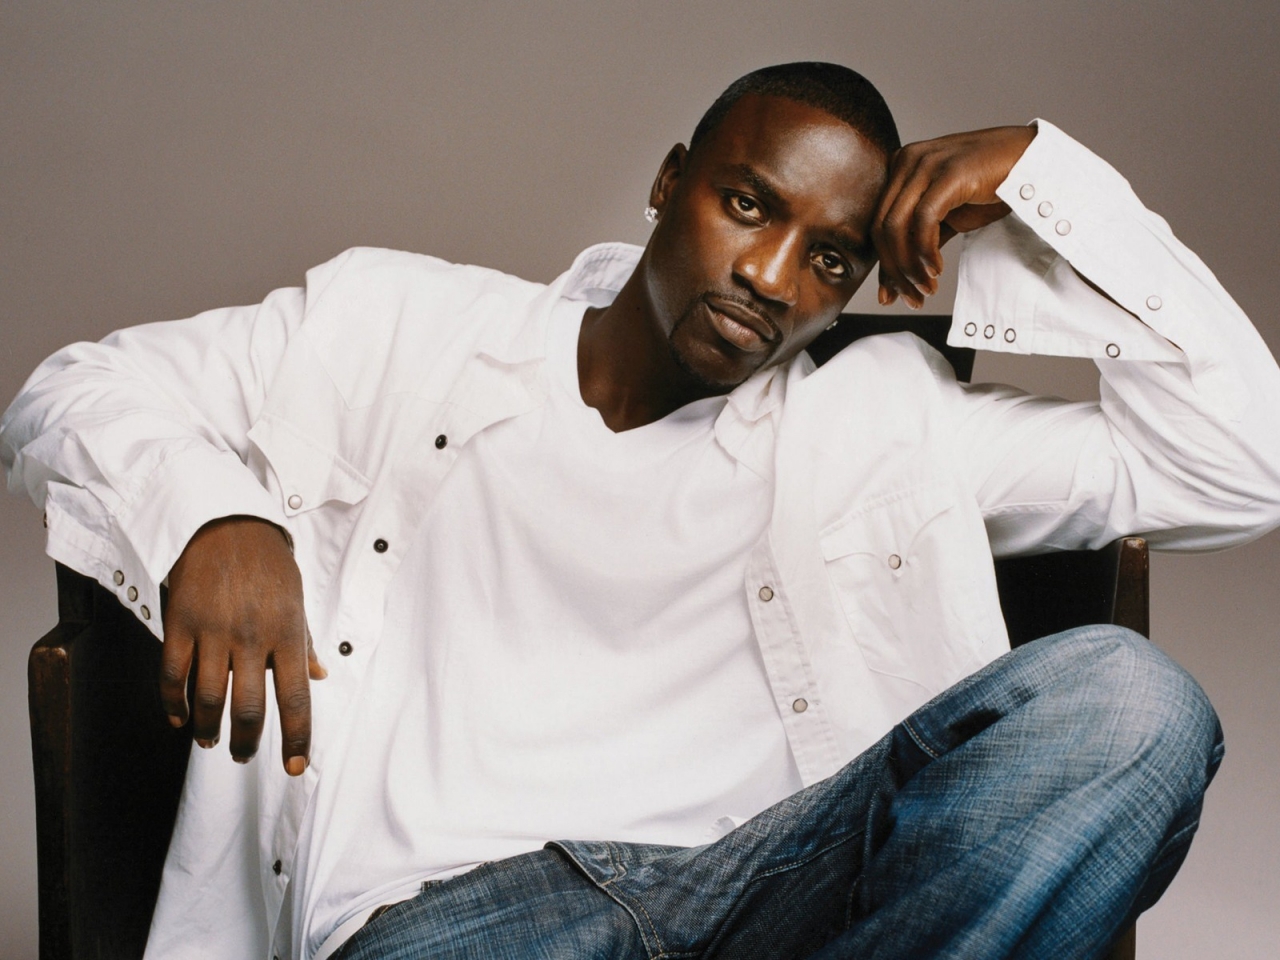 Akon for 1280 x 960 resolution